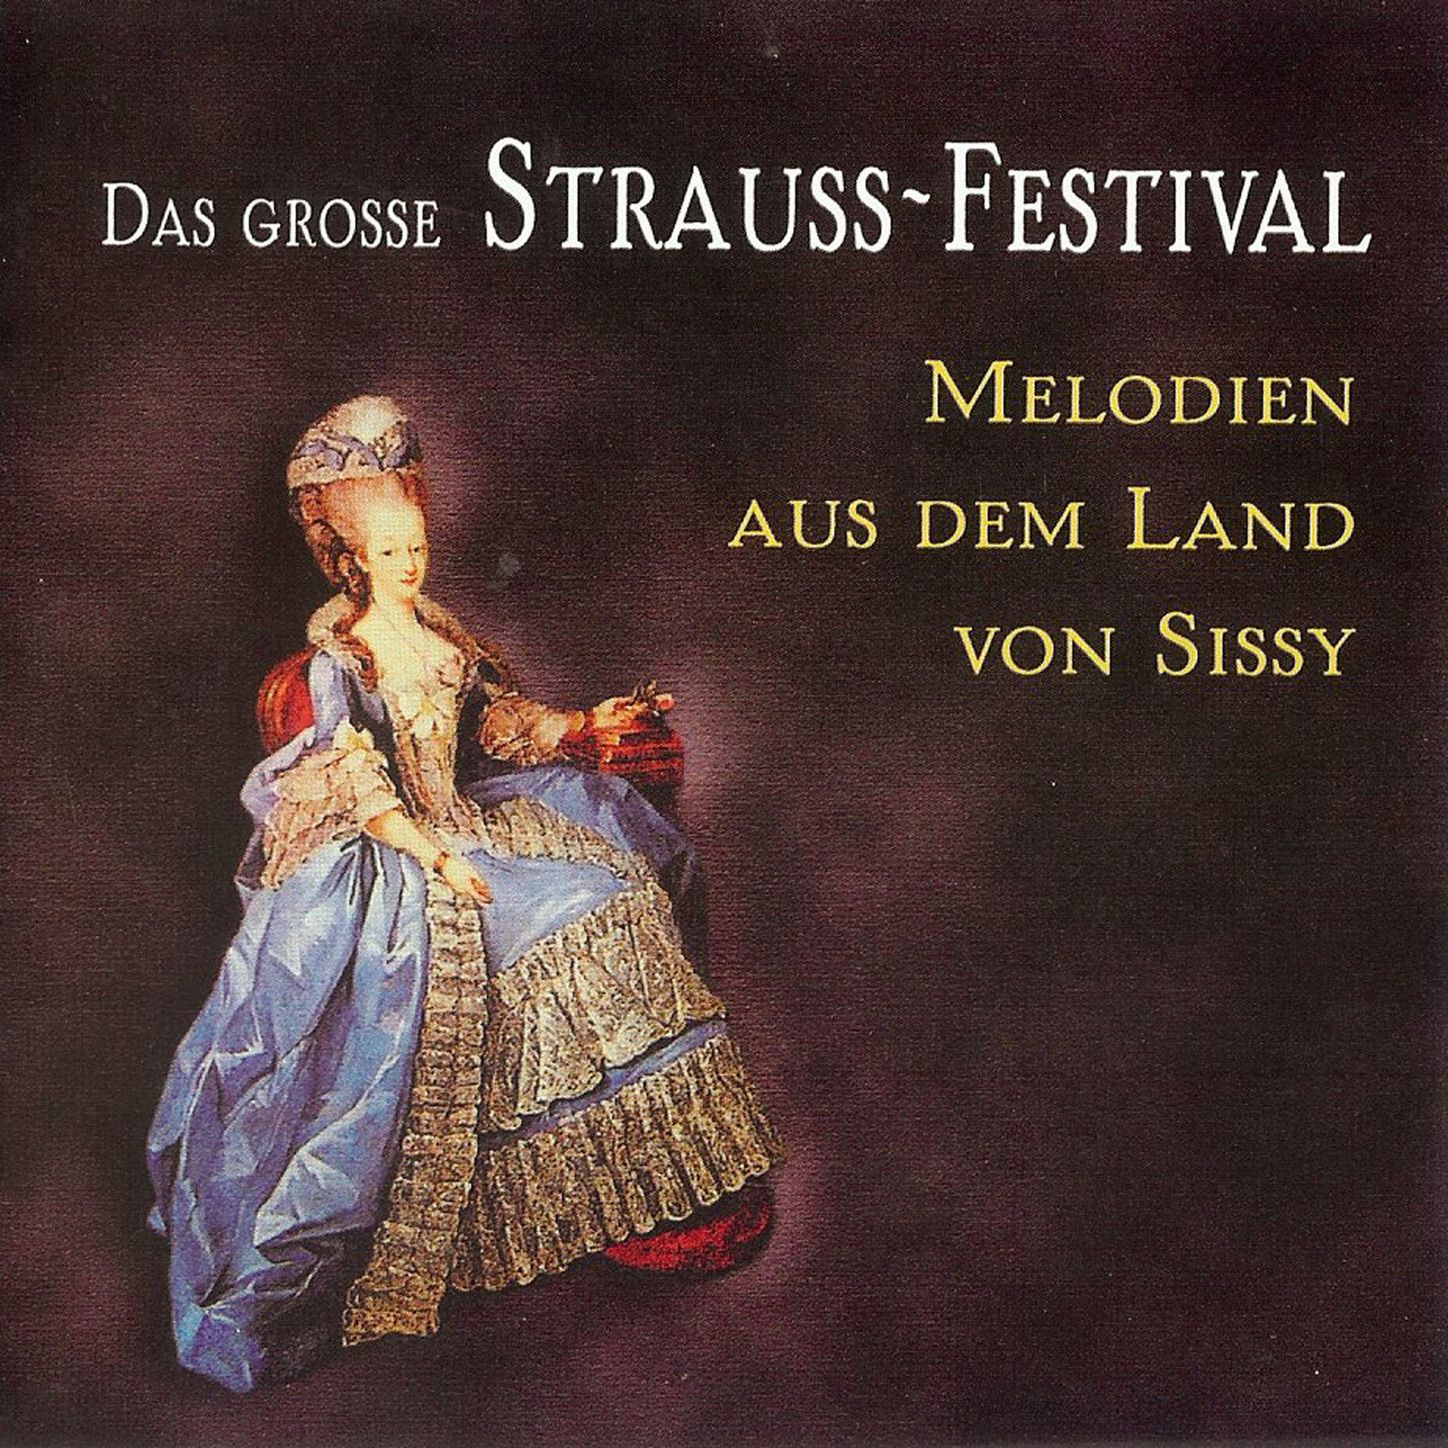 Das gro e StraussFestival  Melodien aus dem Land von Sissy